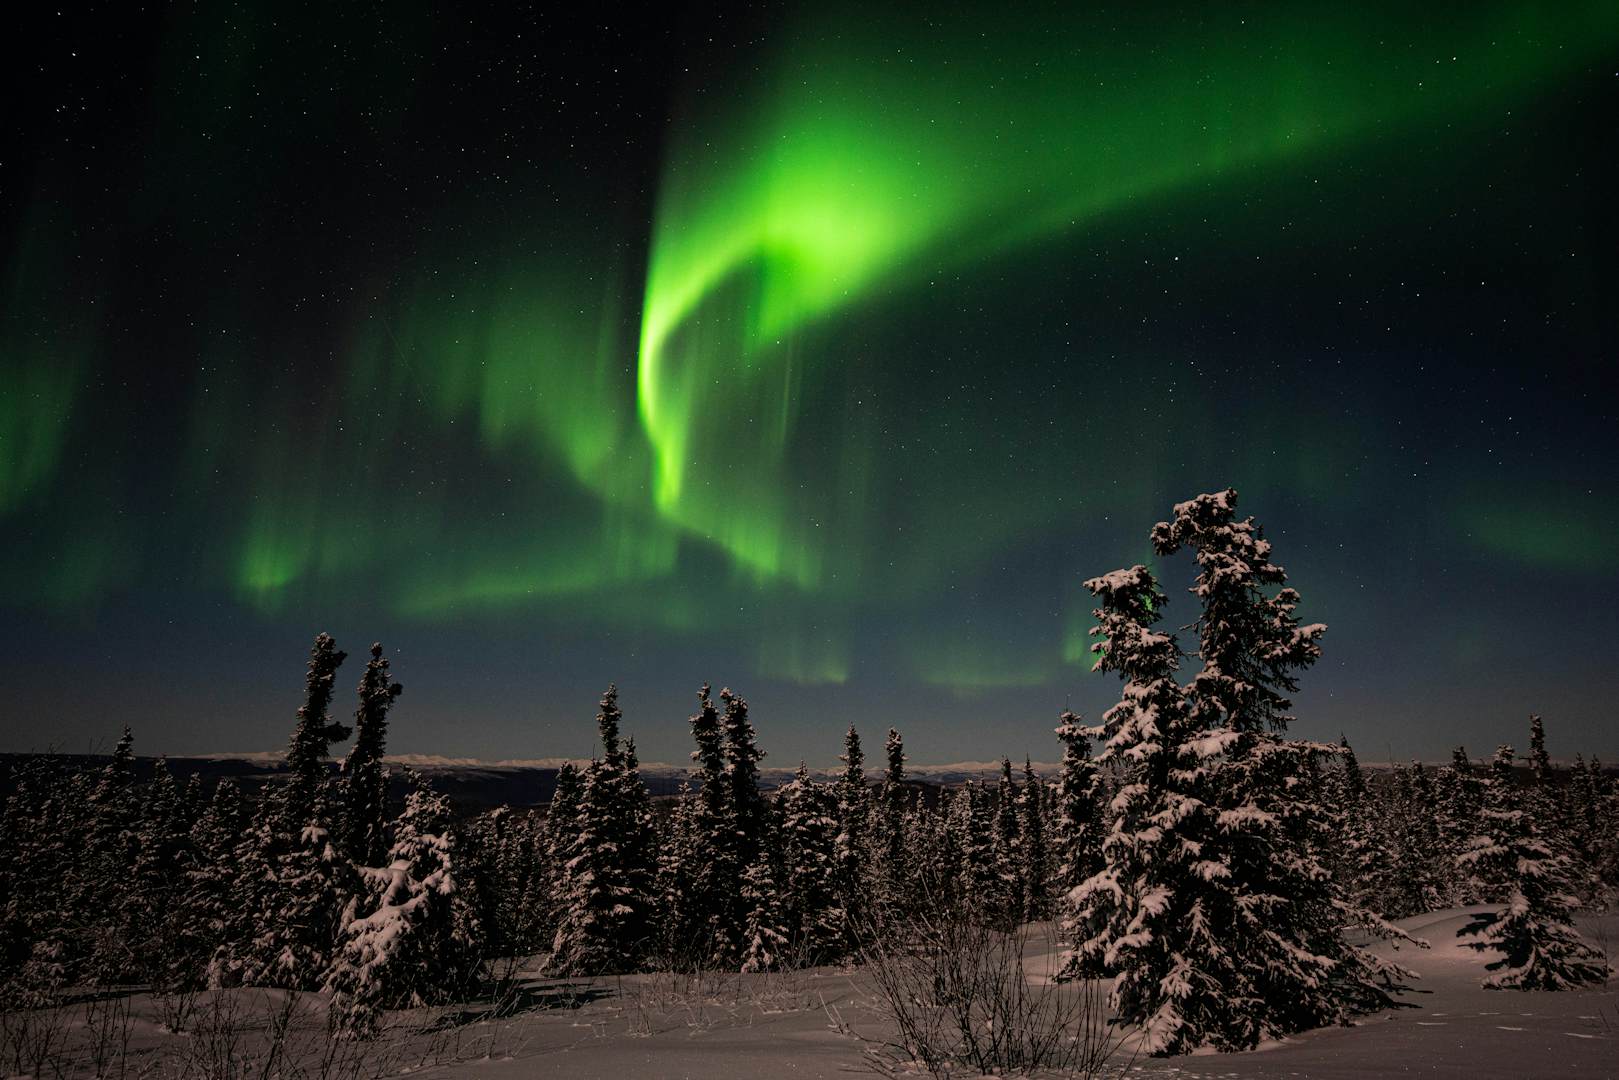 一些技巧可以帮助您提高捕获北极光的出色照片的机会